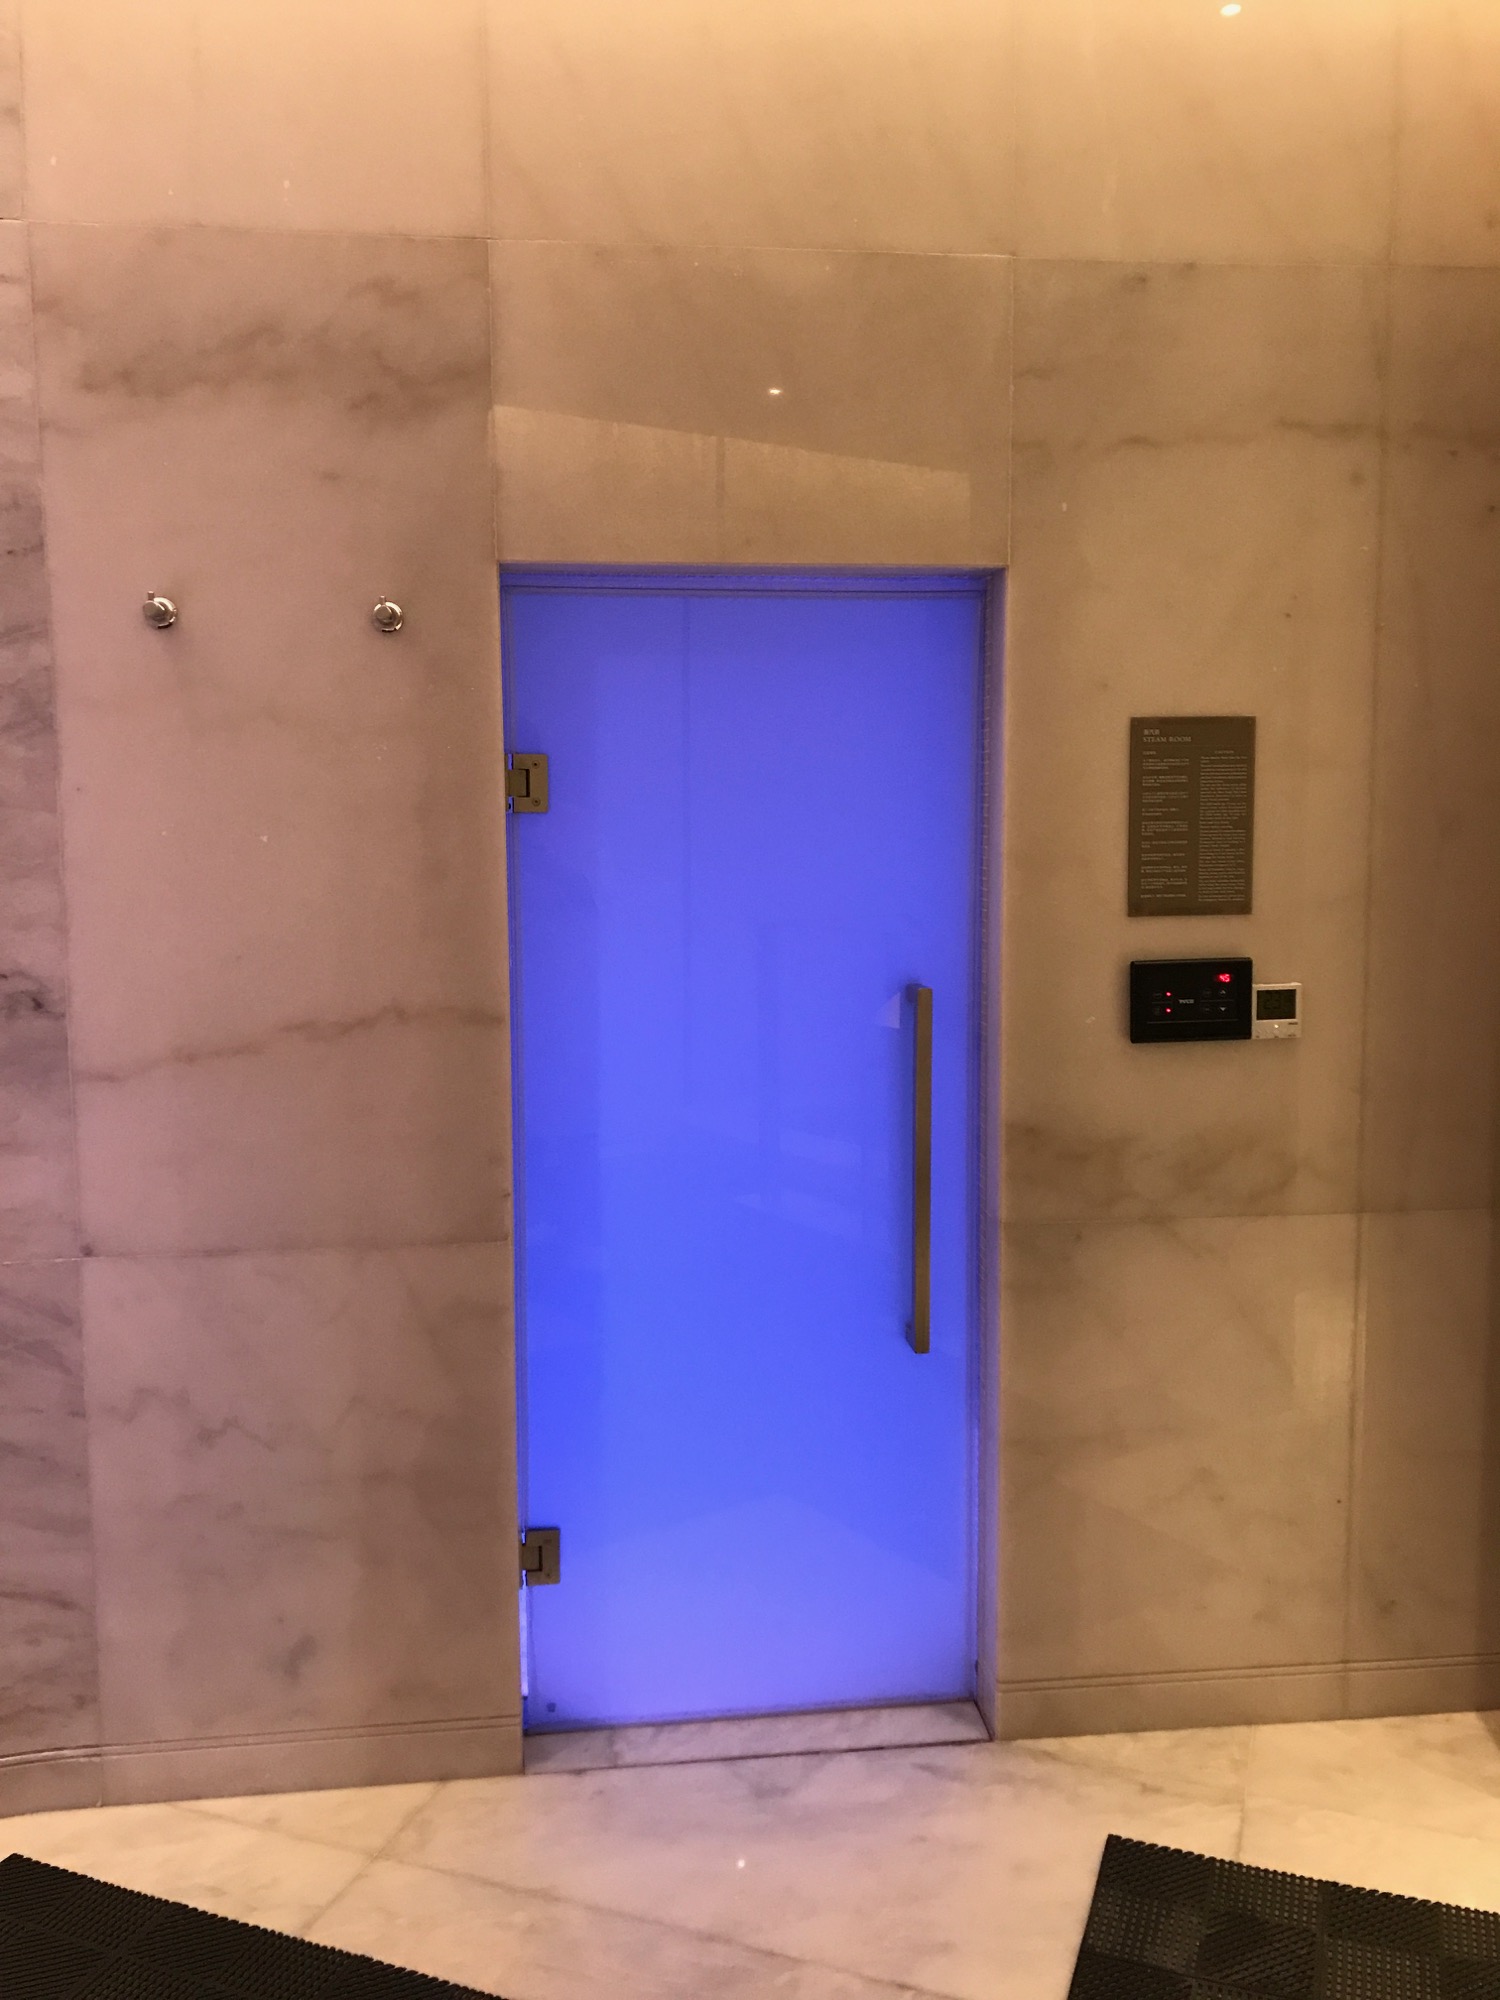 a blue door in a room